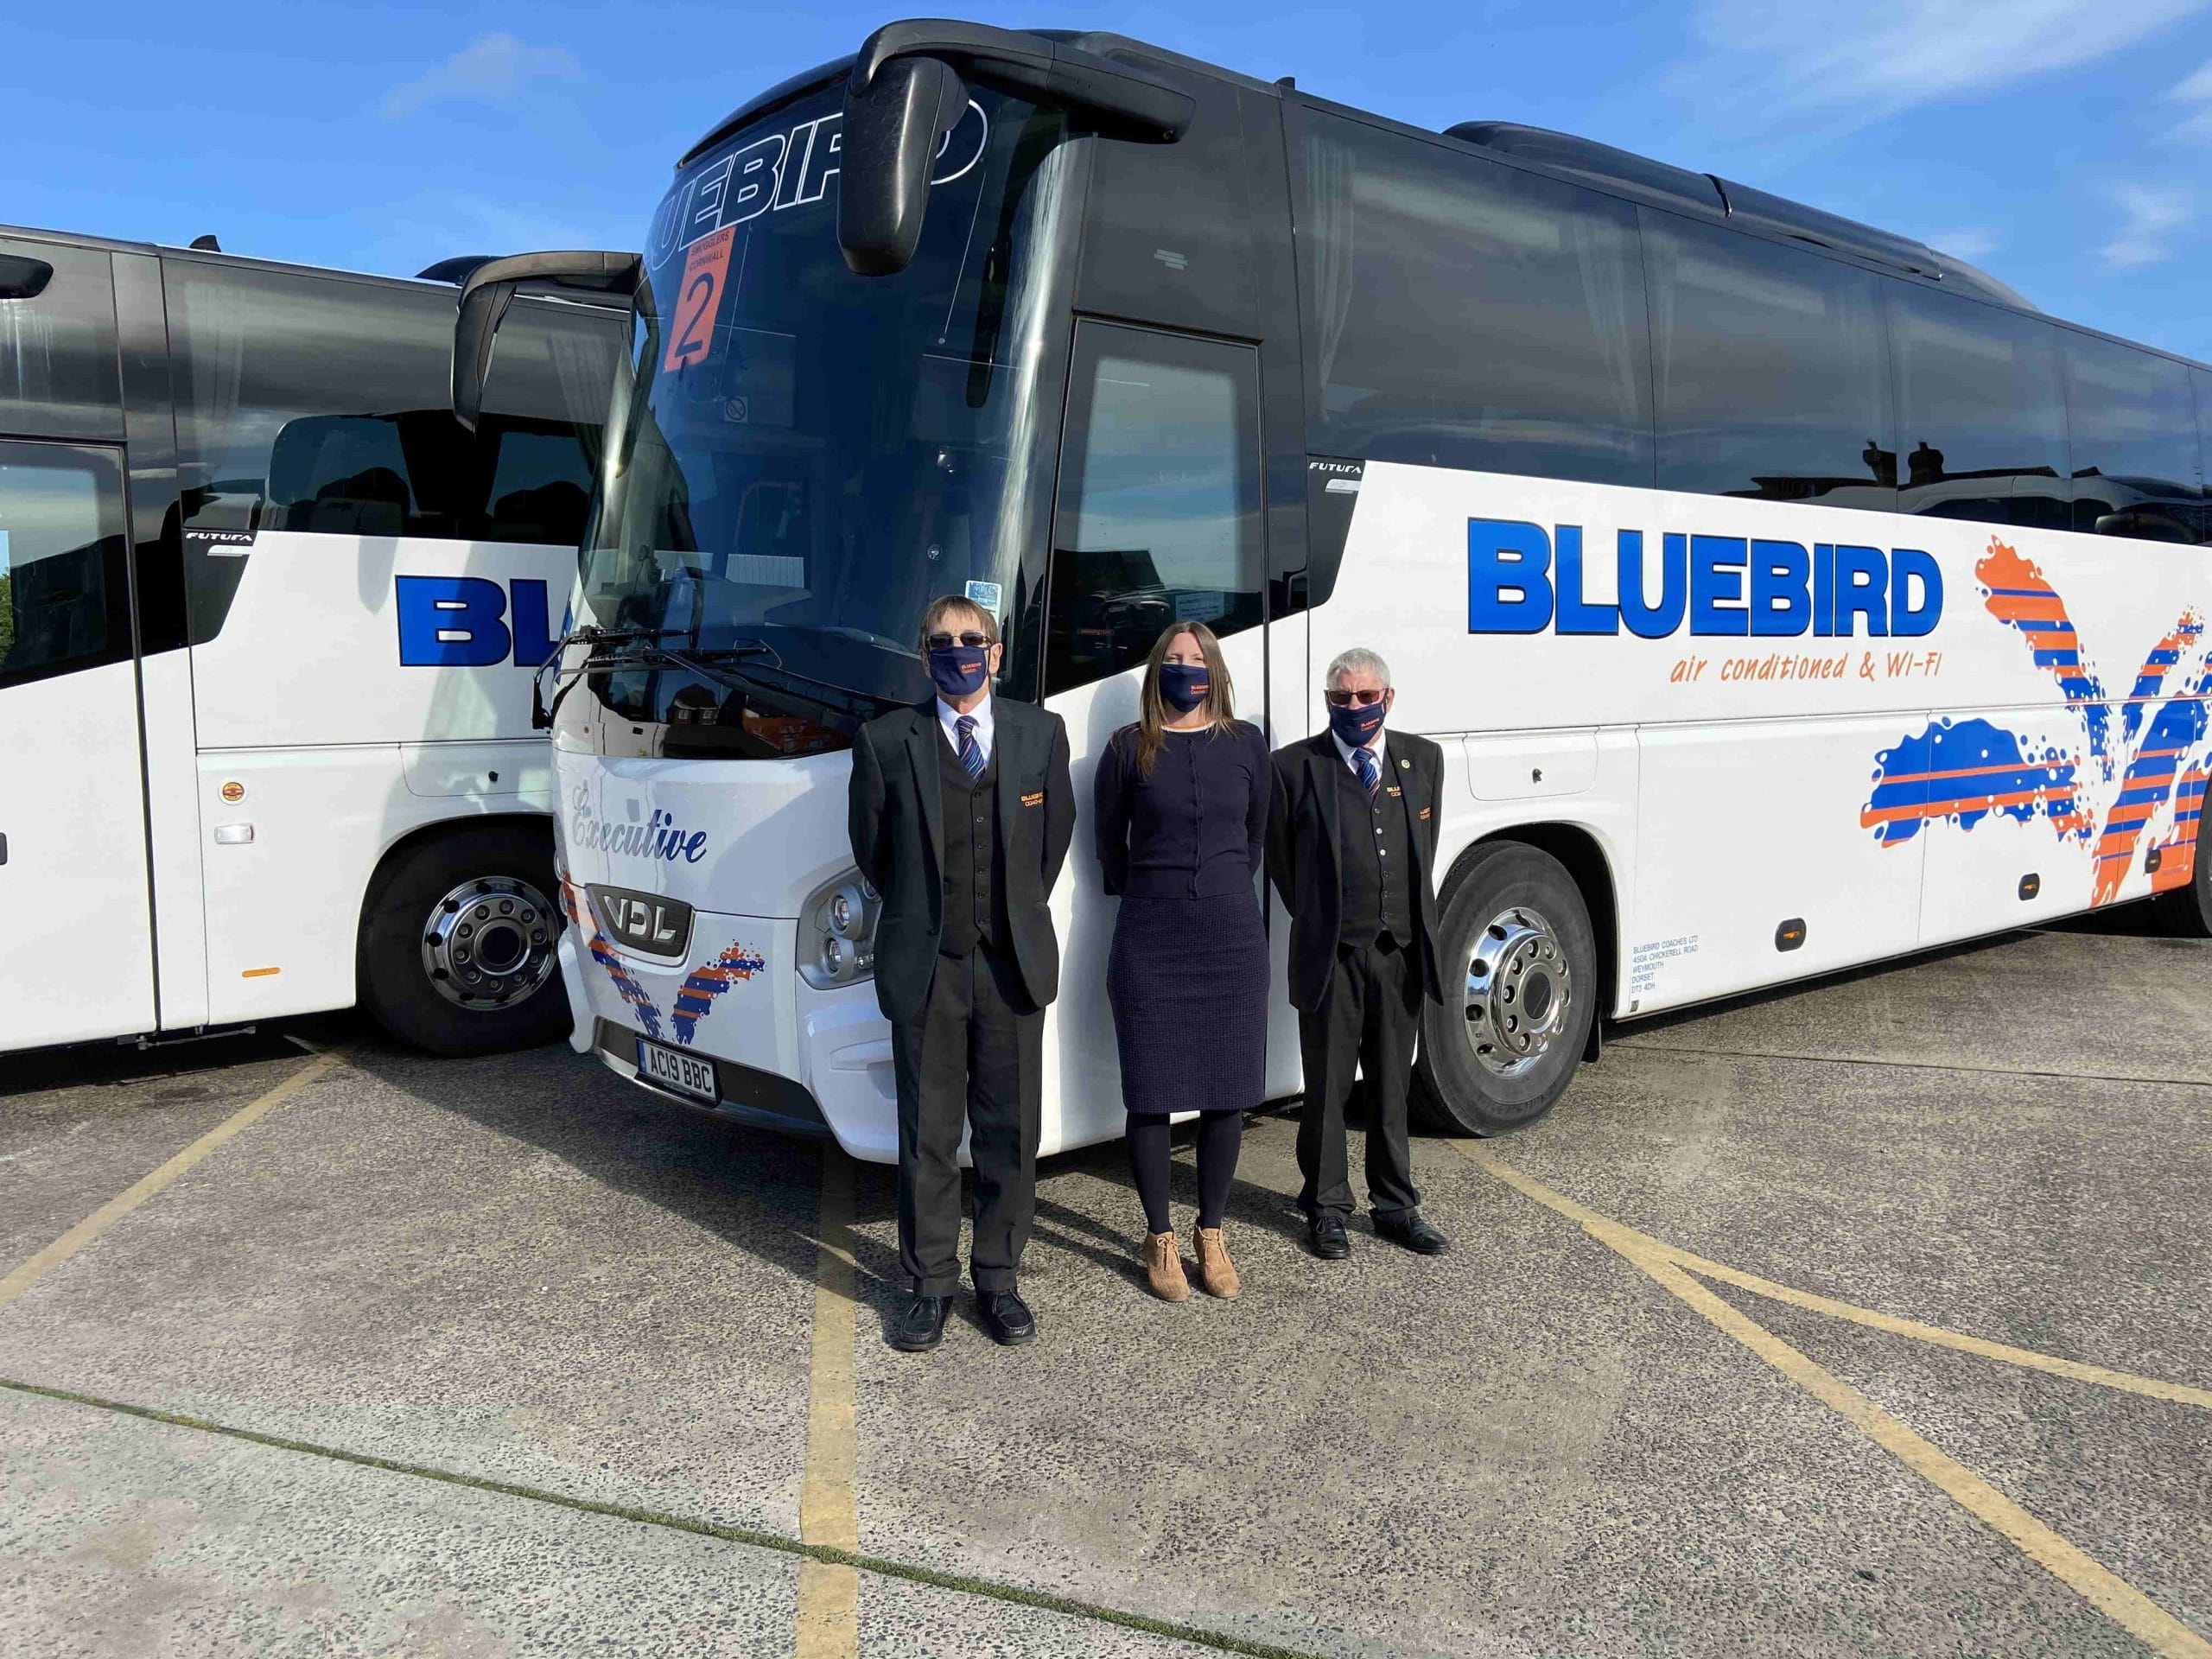 Bluebird coaches of Weymouth